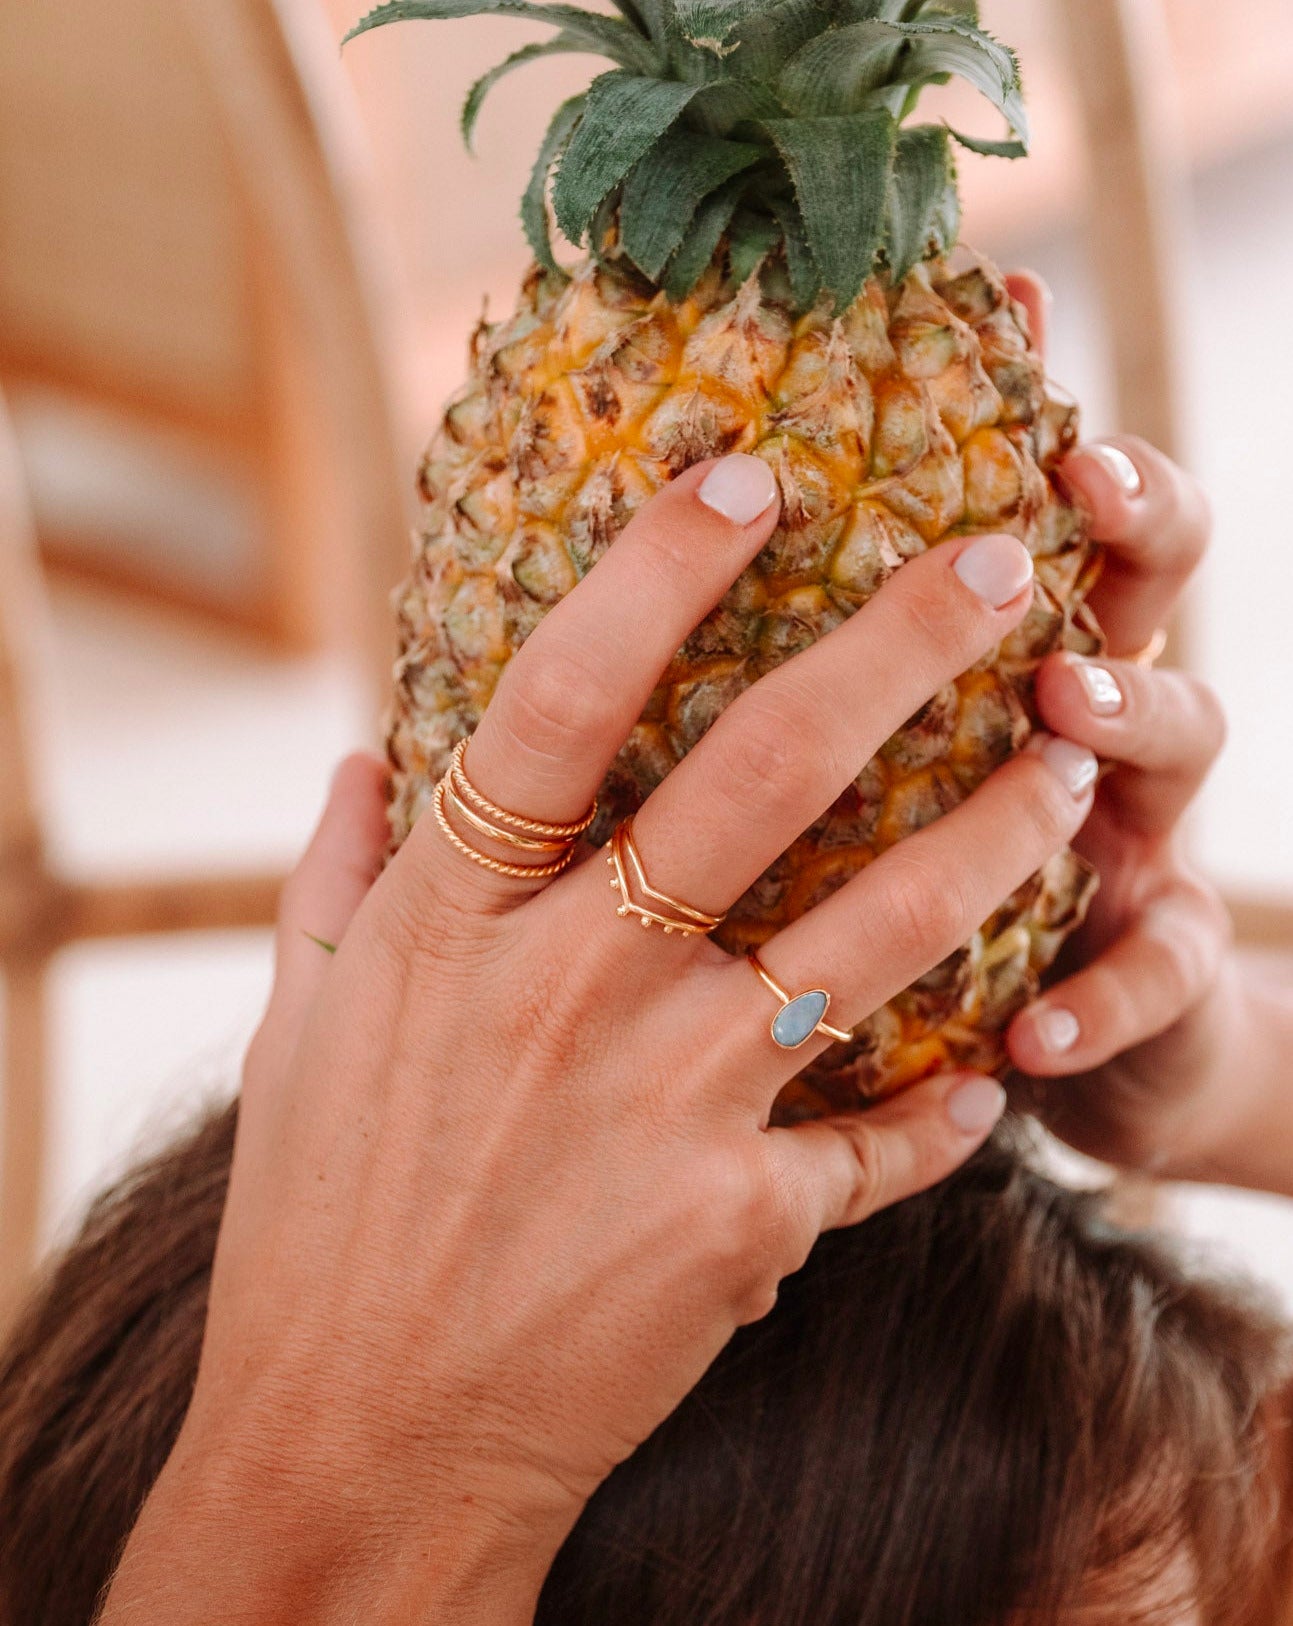 Handmade with love | VERLAN Jewellery | Fairfashion | Handgemachte Ringe im Boho Look aus Bali | Fair und nachhaltig handgefertigter Schmuck | Bali Tales | V-Ring | Sterlingsilber | 22 Karat Vergoldung | Silberschmuck